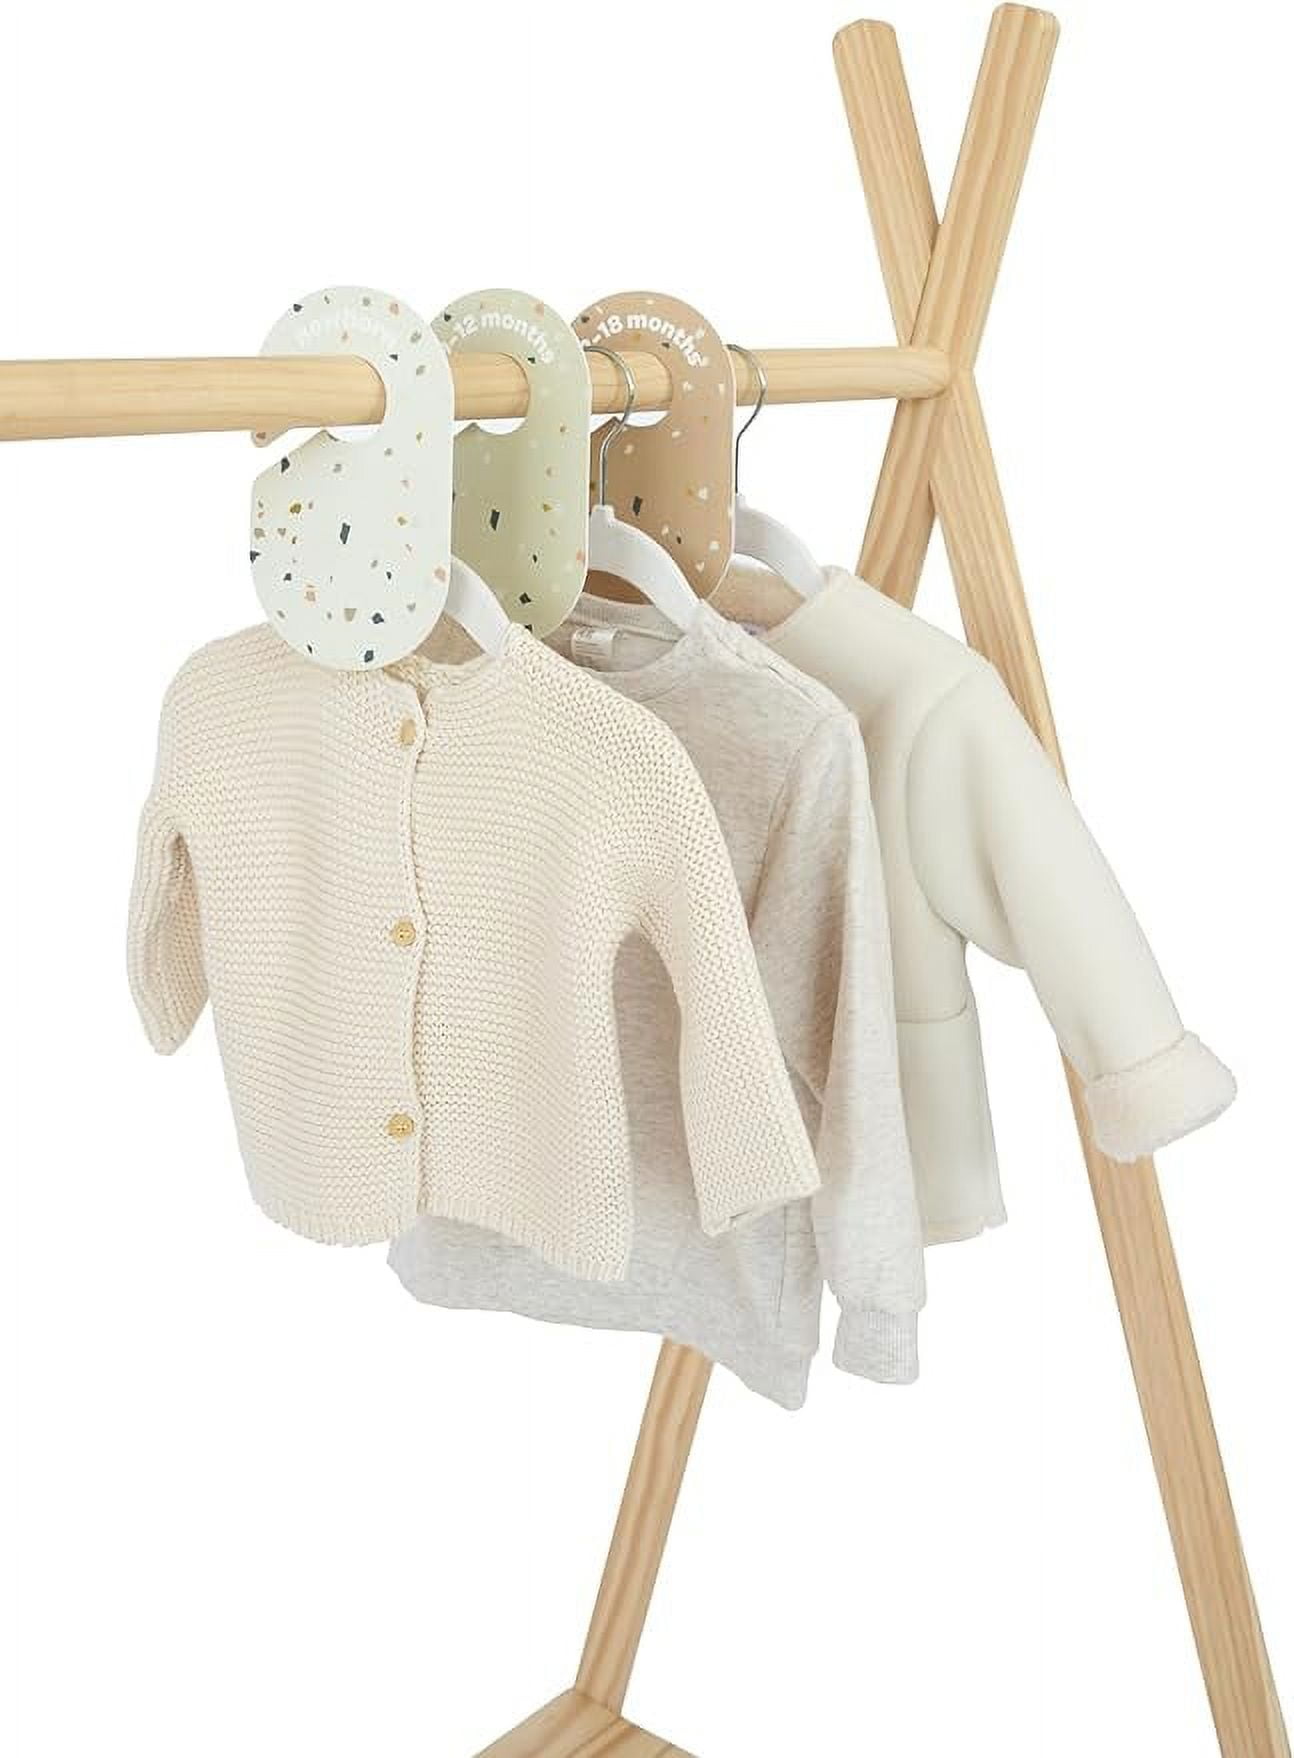 Velvet Baby Clothes Hanger Children's Drying Rack Non slip - Temu